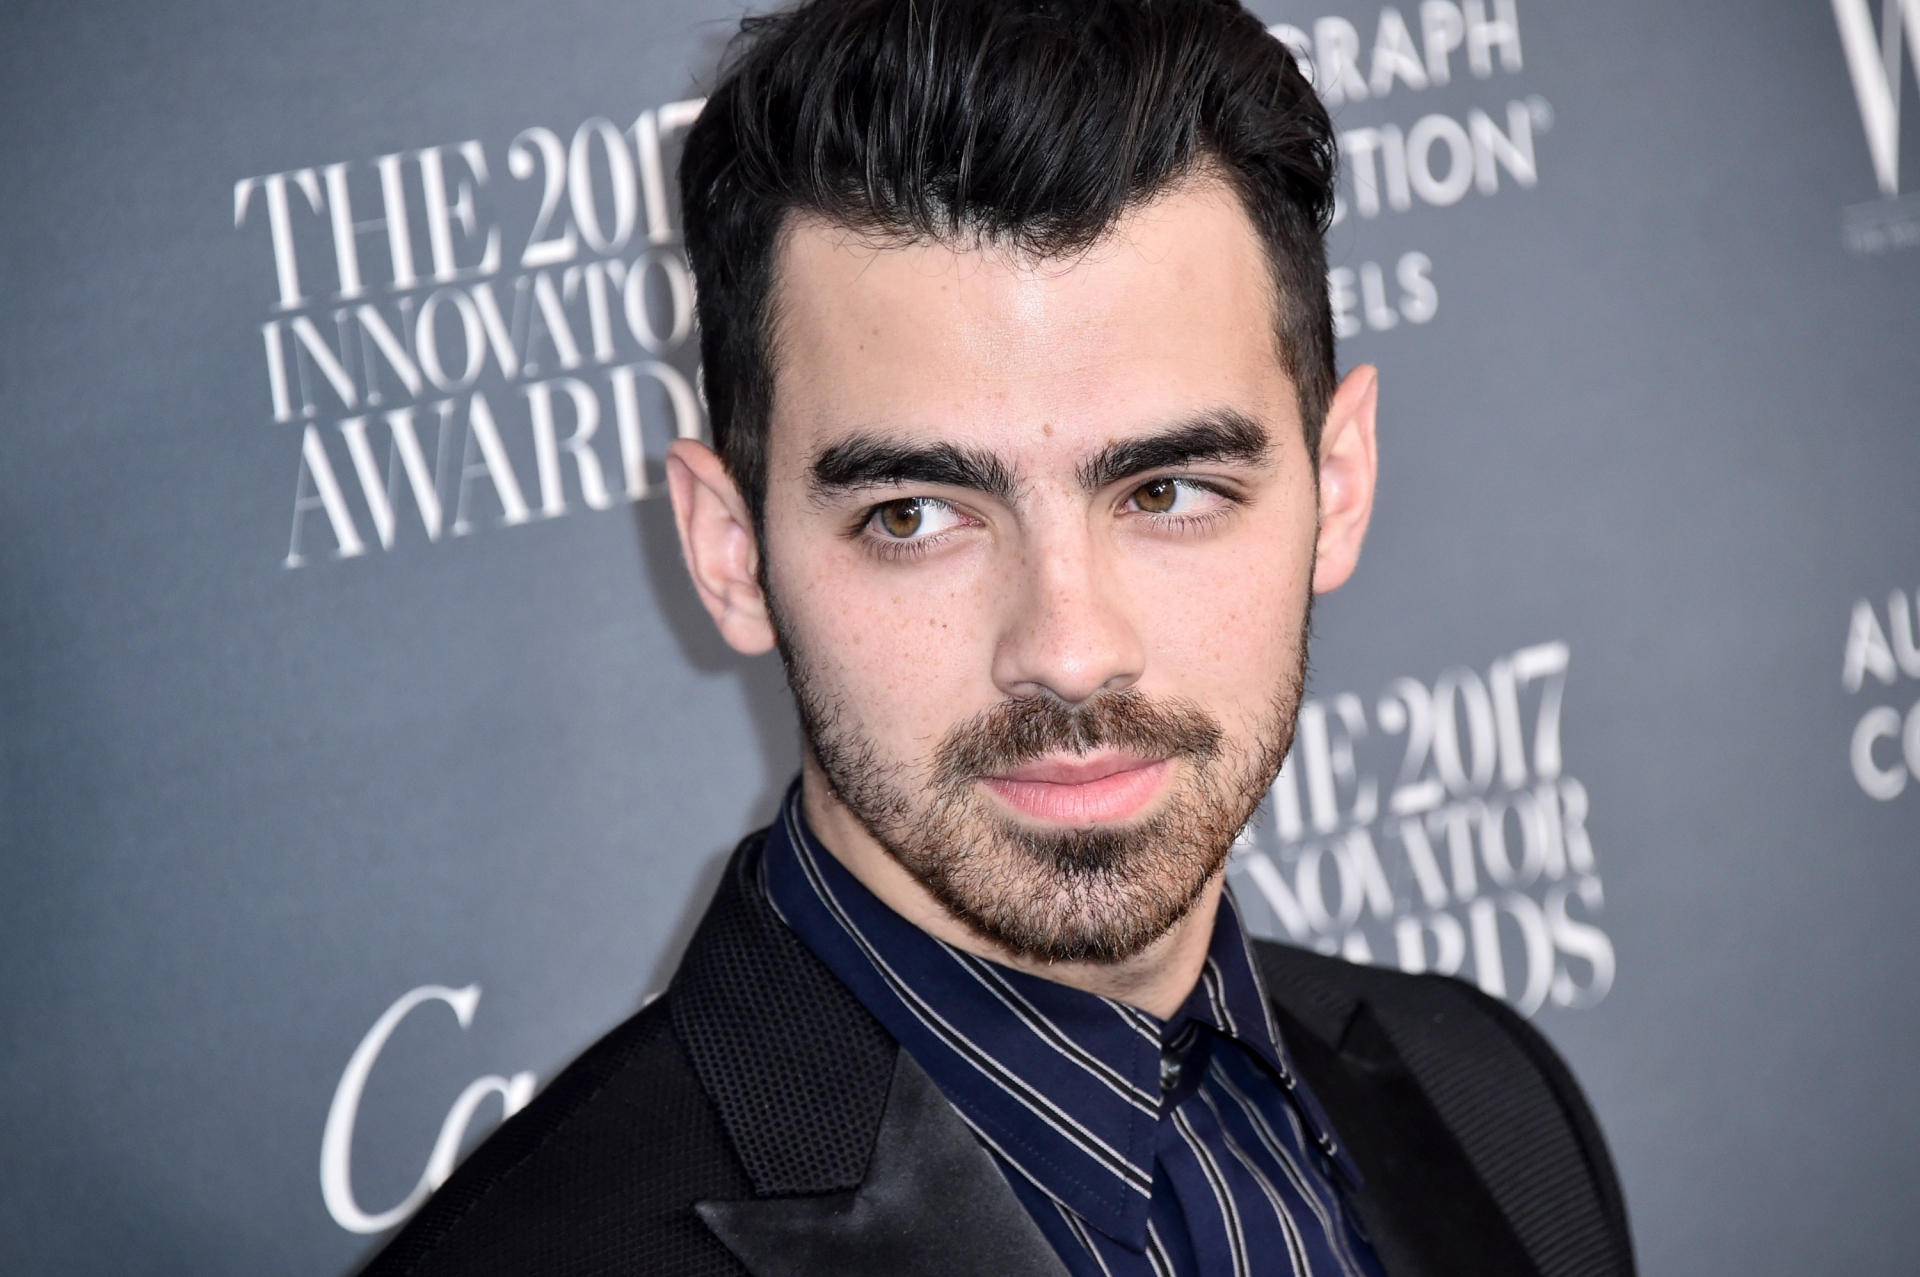 Joe Jonas féltékeny volt Nick Jonasra - El is sírta magát